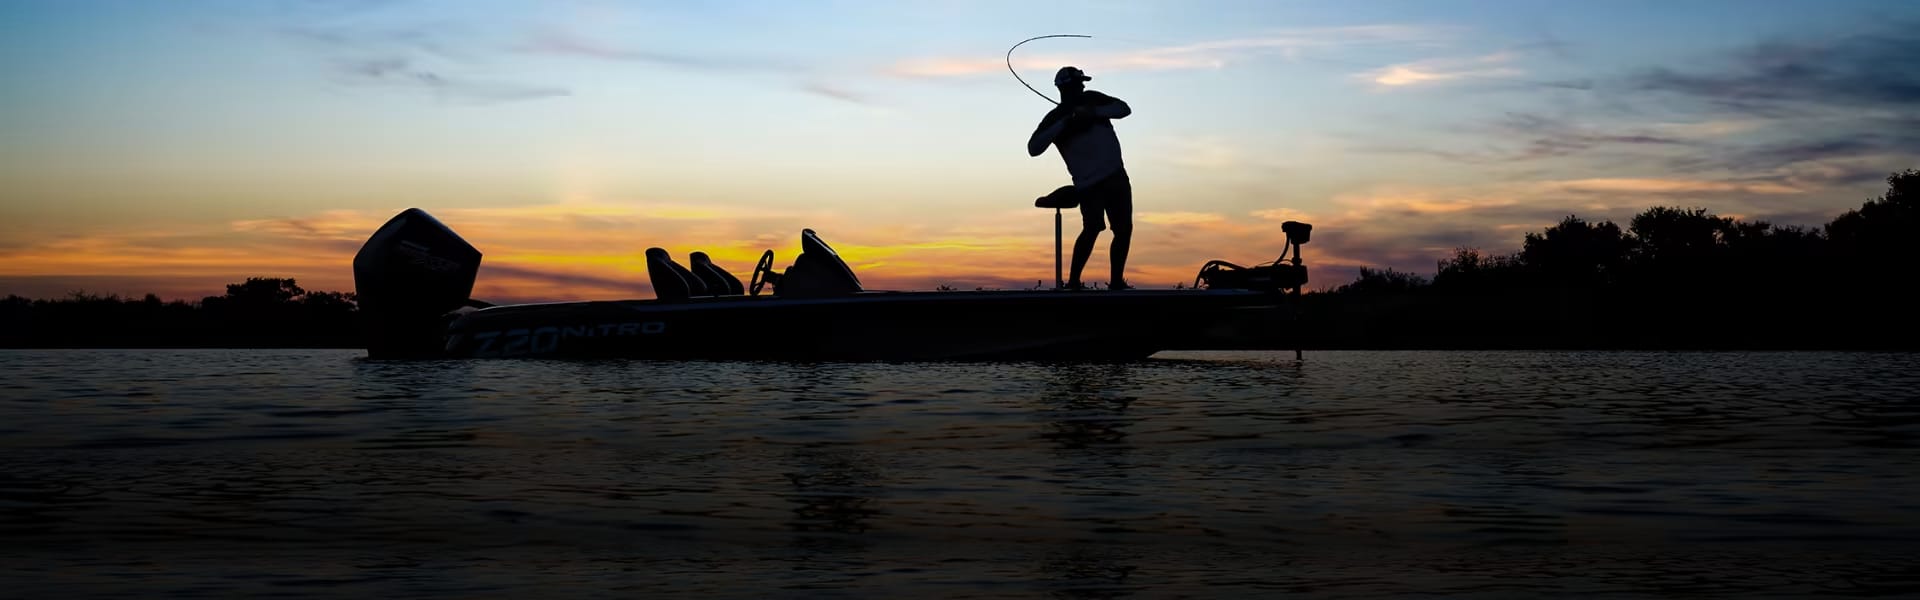 Man Fishing at Sunset